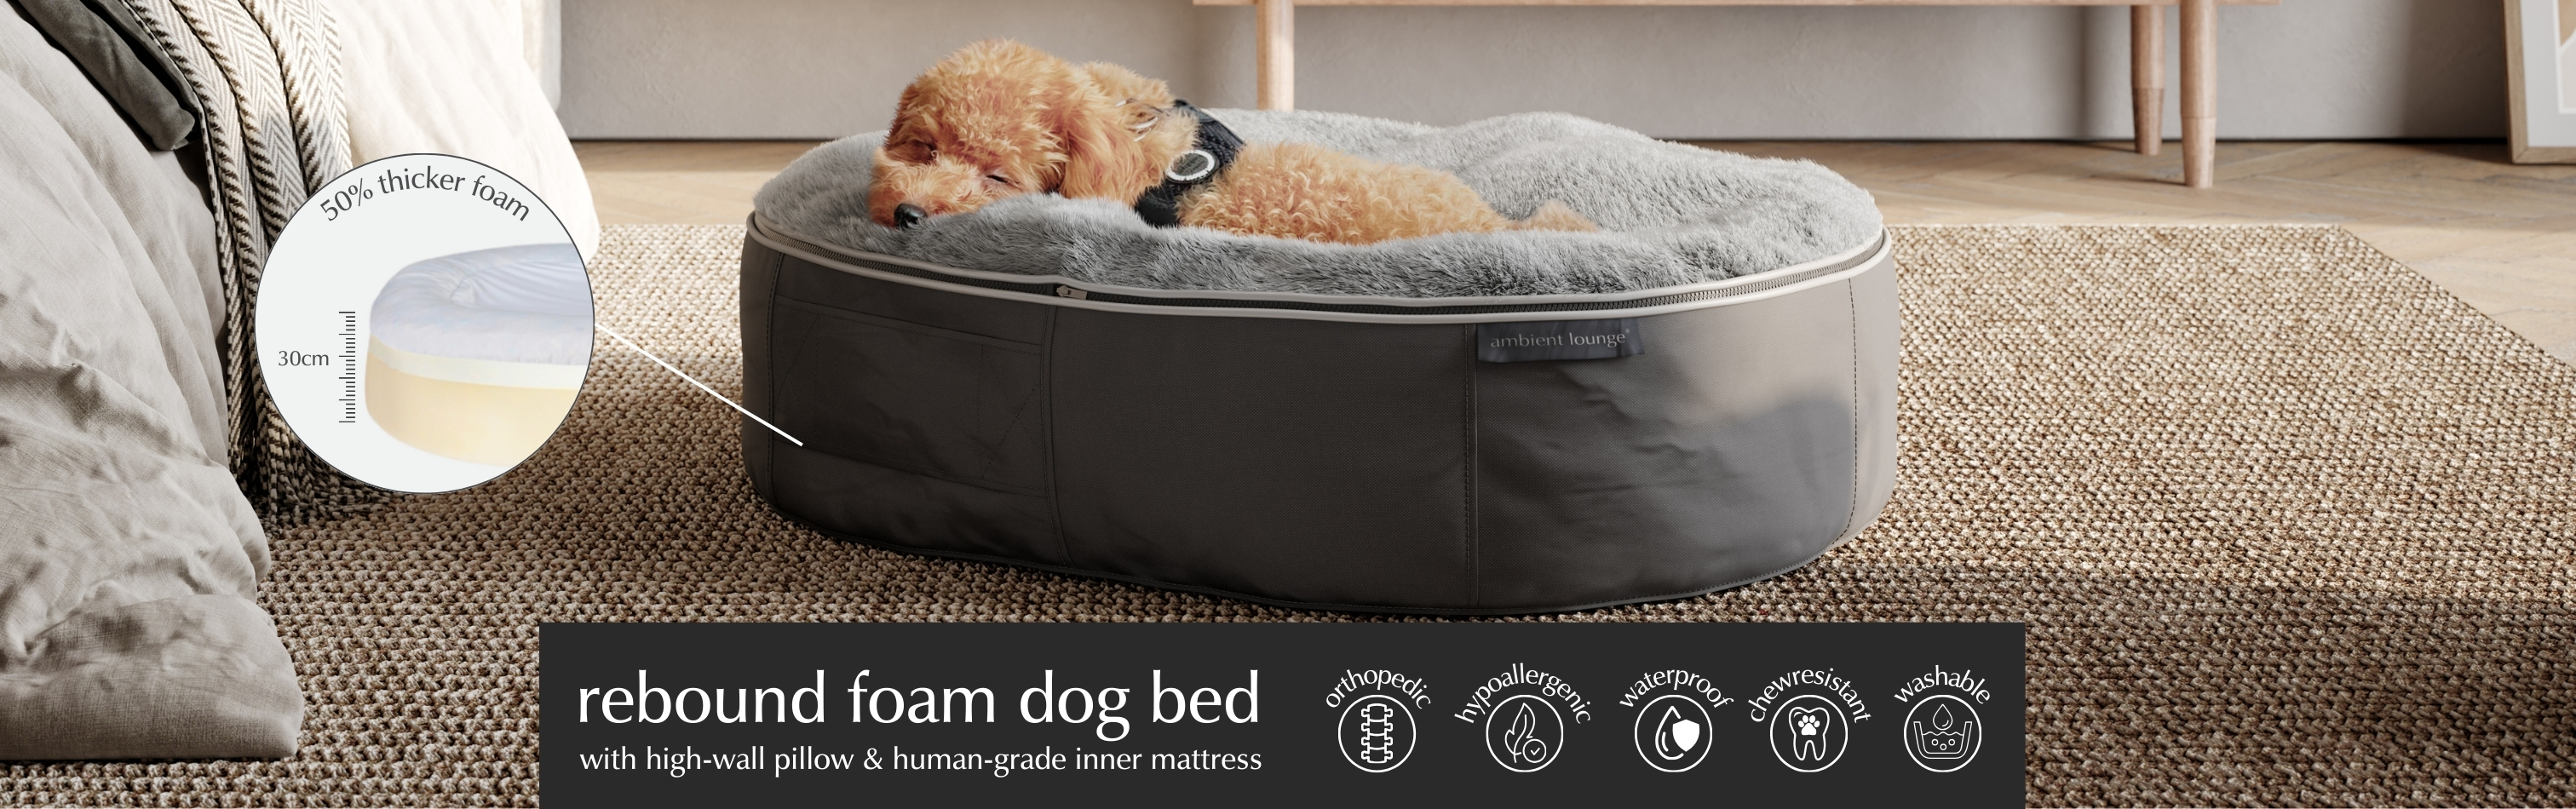 Rebound Foam Mattress Dog Bed